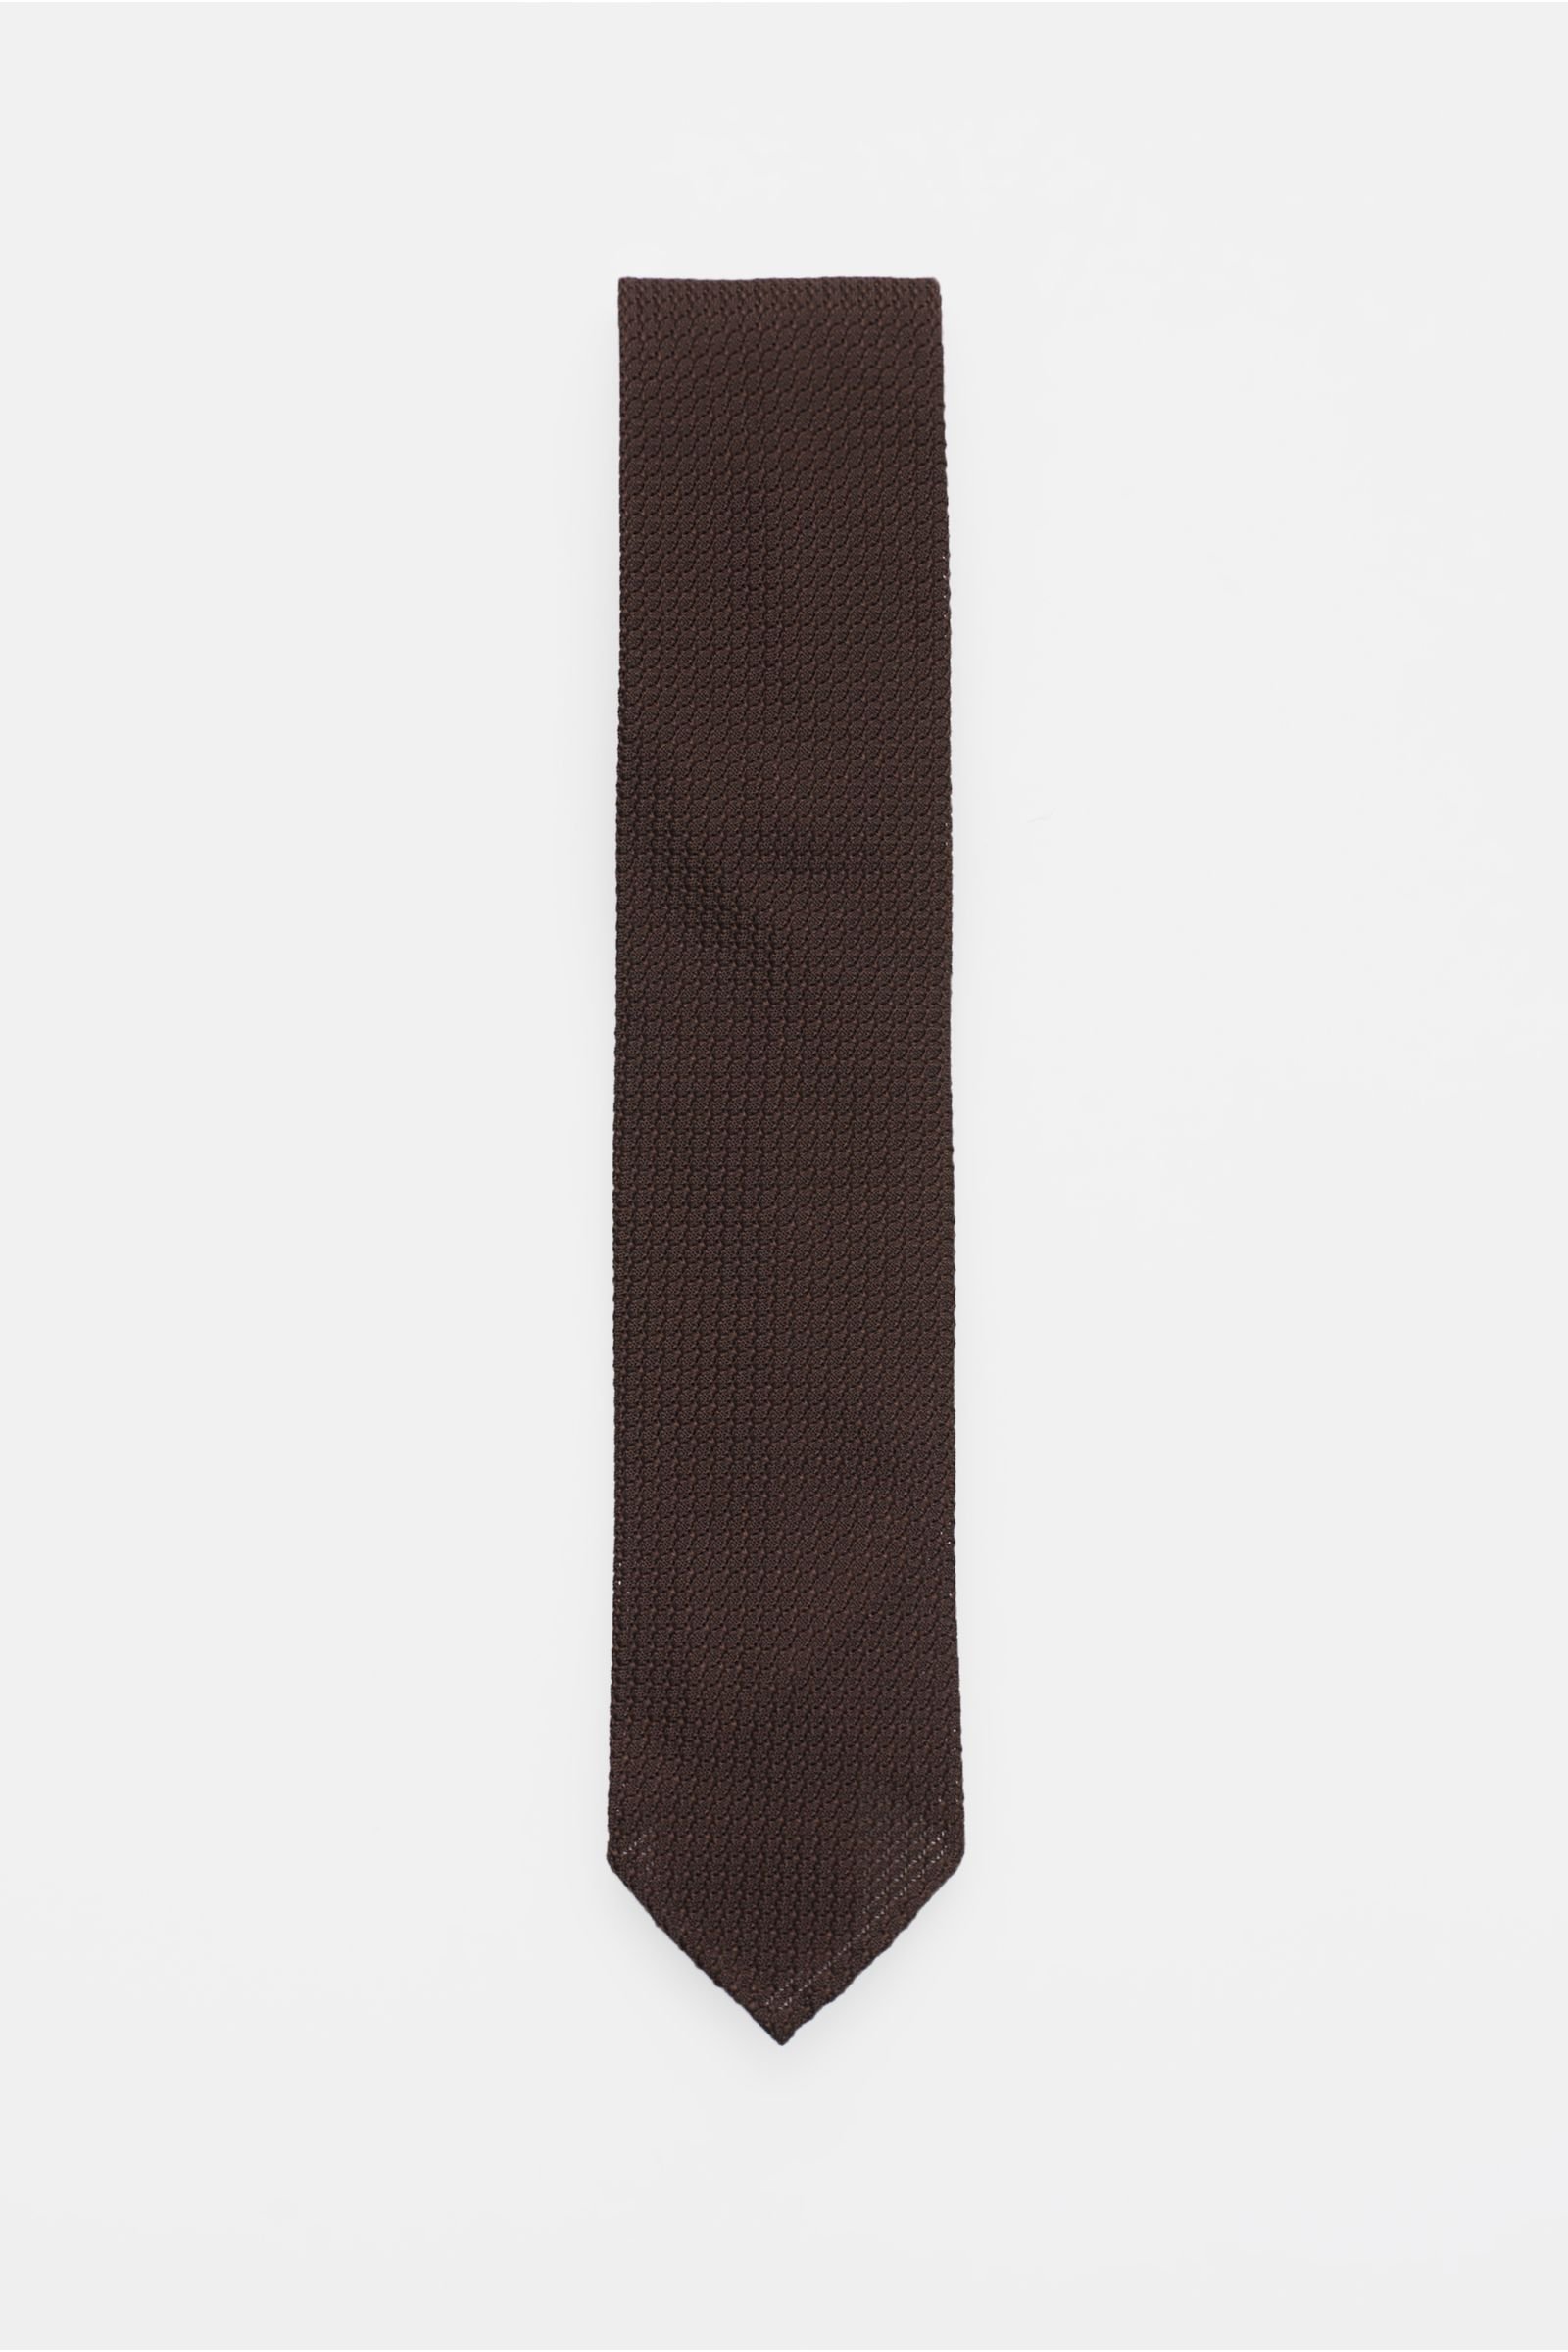 Silk tie brown